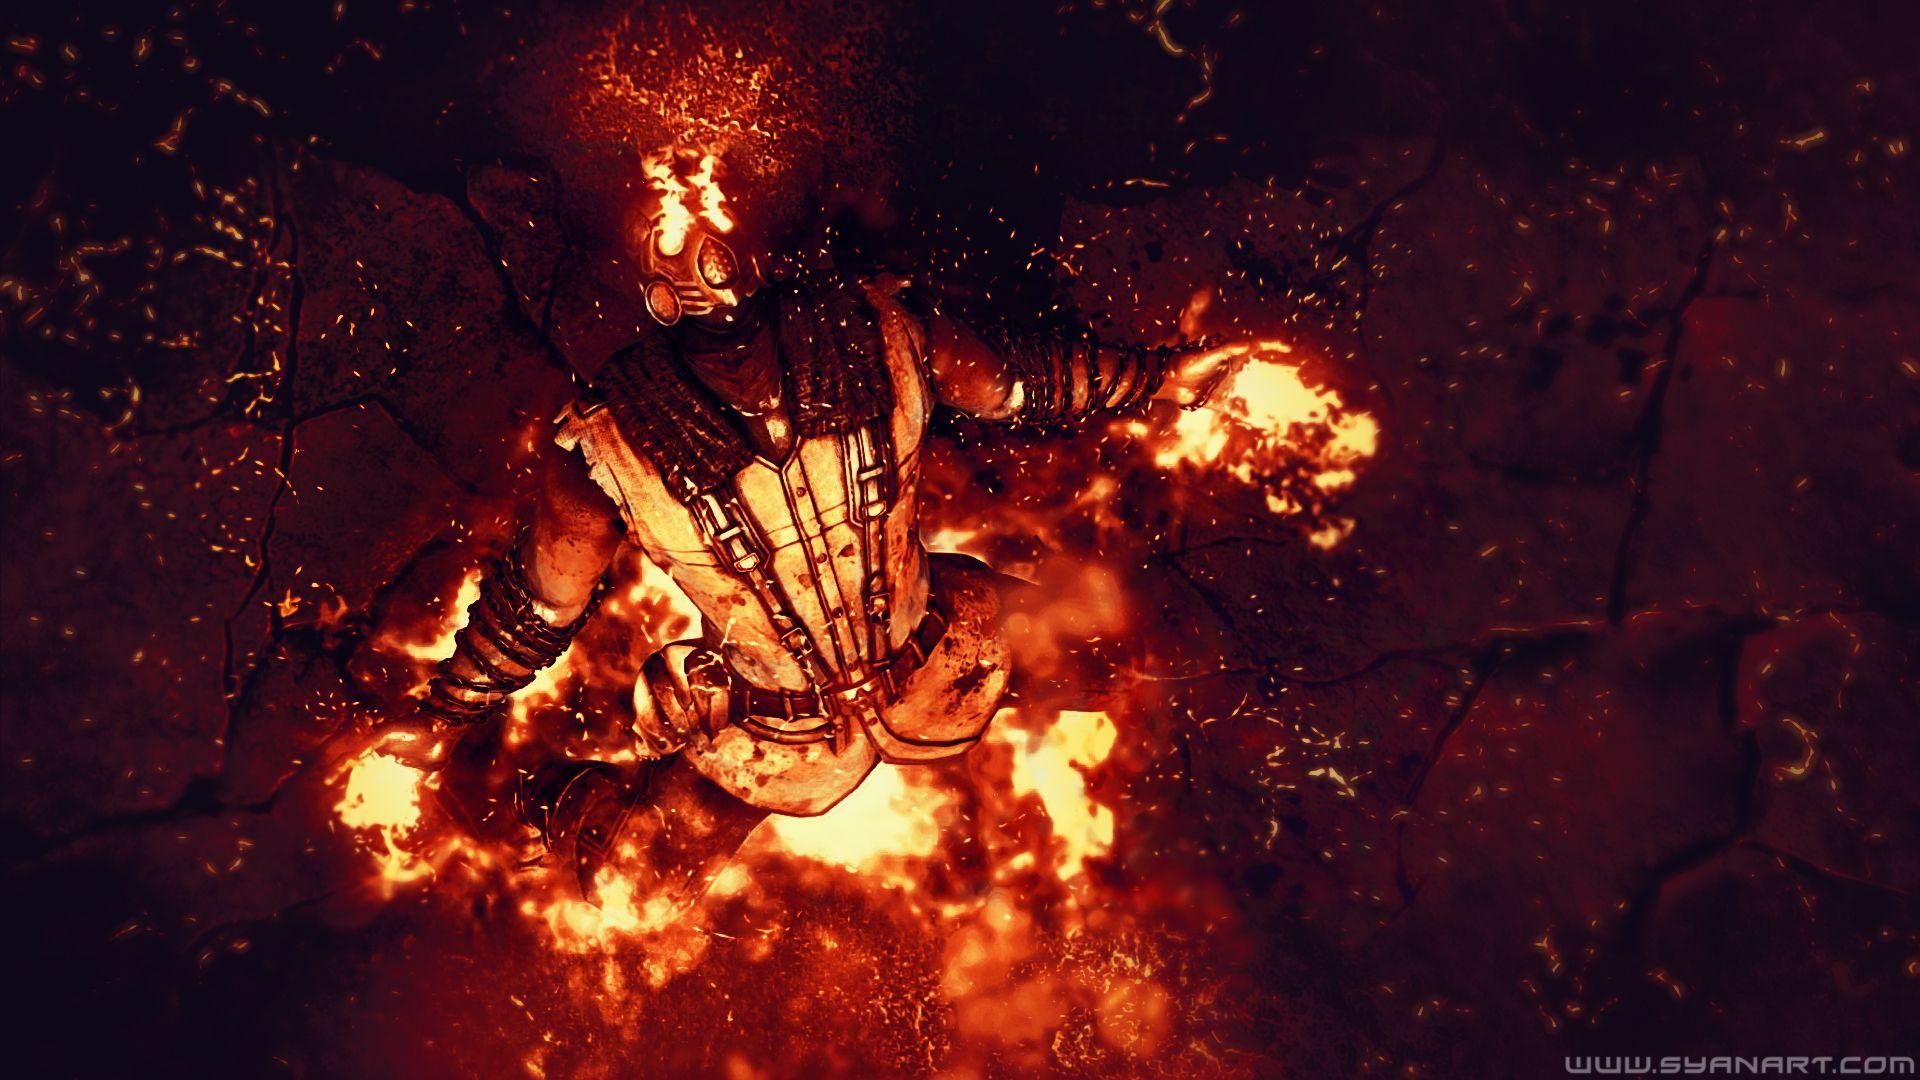 Mortal Kombat X Wins Wallpaper Gaming Content